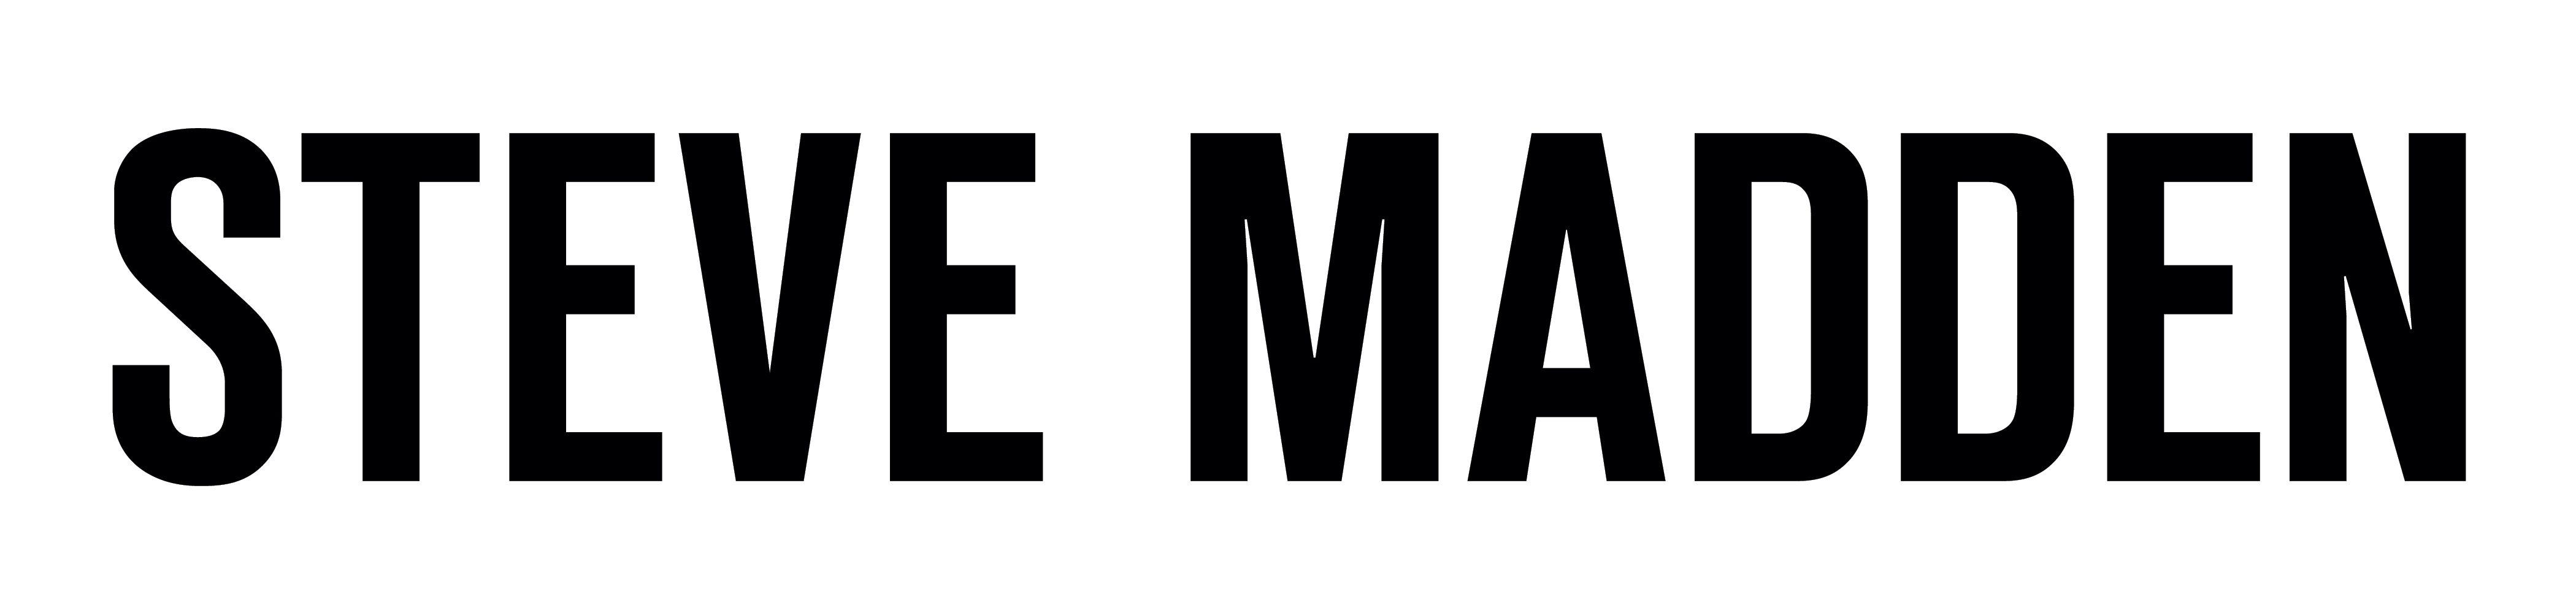 Steve Madden Logo - Steve Madden – Logos Download